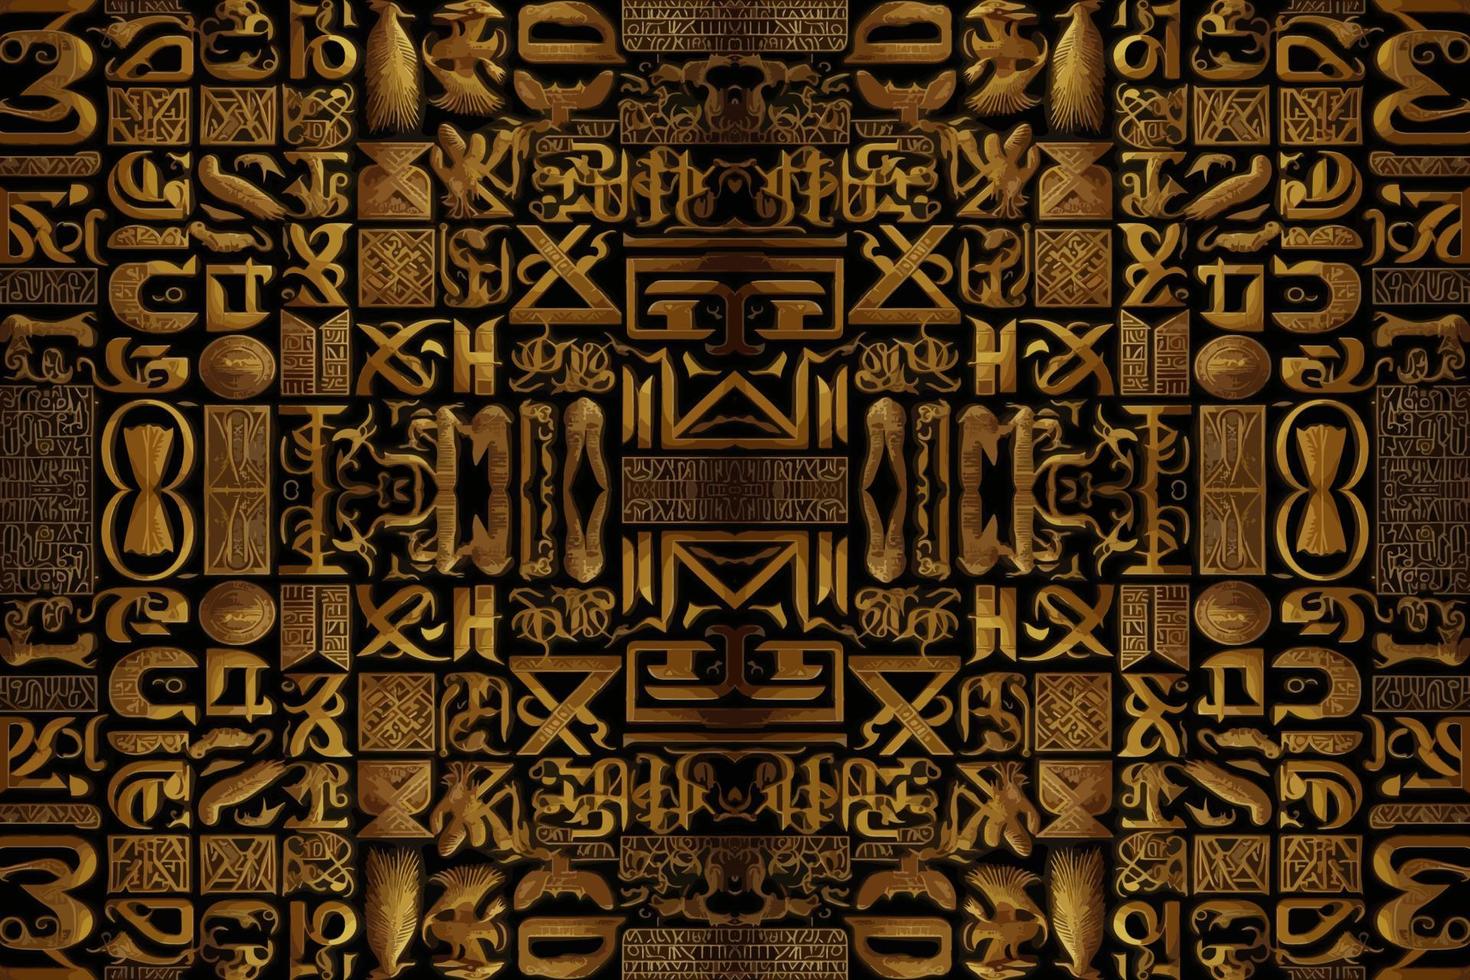 égyptien hiéroglyphes alphabet modèle d'or Contexte. abstrait traditionnel populaire antique tribal ethnique Egypte graphique doubler. fleuri élégant luxe ancien rétro style pour texture textile en tissu tuile. vecteur